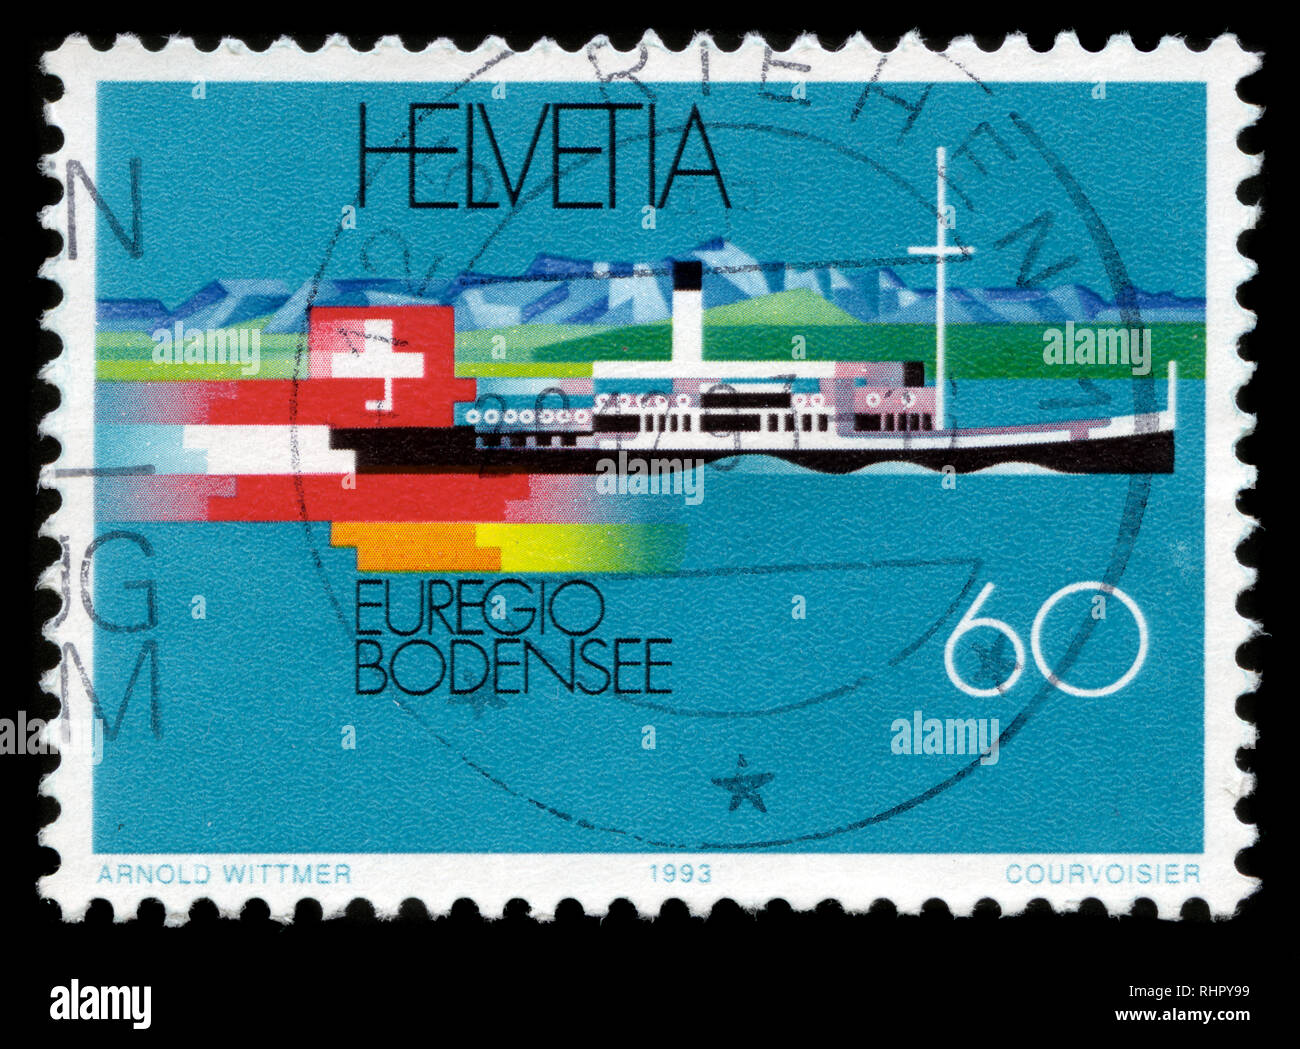 Francobollo dalla Svizzera nel Euregio Bodensee serie rilasciato in 1993 Foto Stock